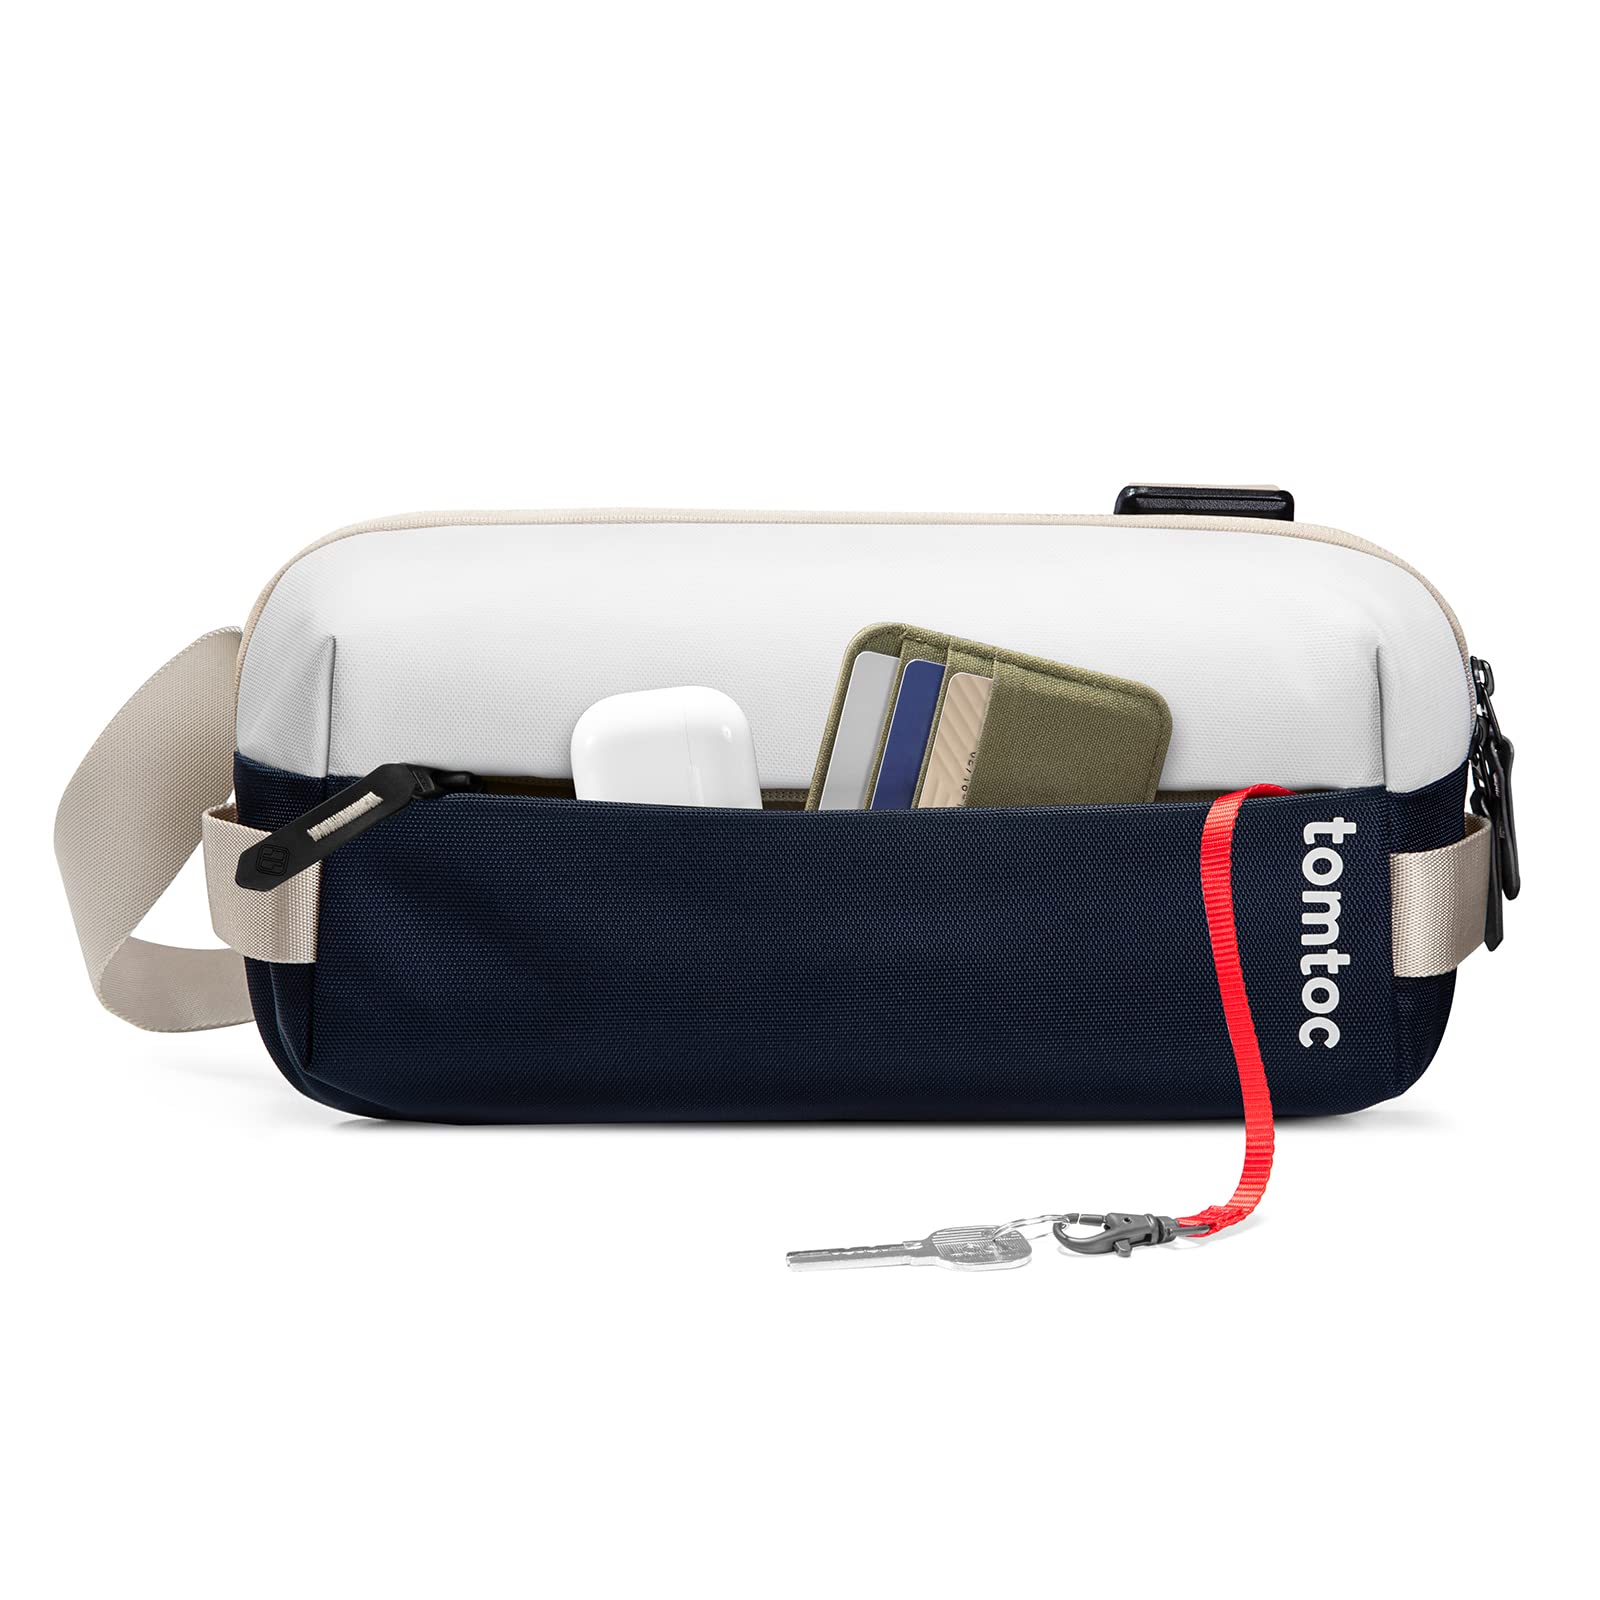 [tomtoc] ボディバッグ メンズ ワンショルダーバッグ 斜めがけ 小さめ 撥水 軽量 ミニショルダー 鞄 iPad mini対応 デイリーユース アウ